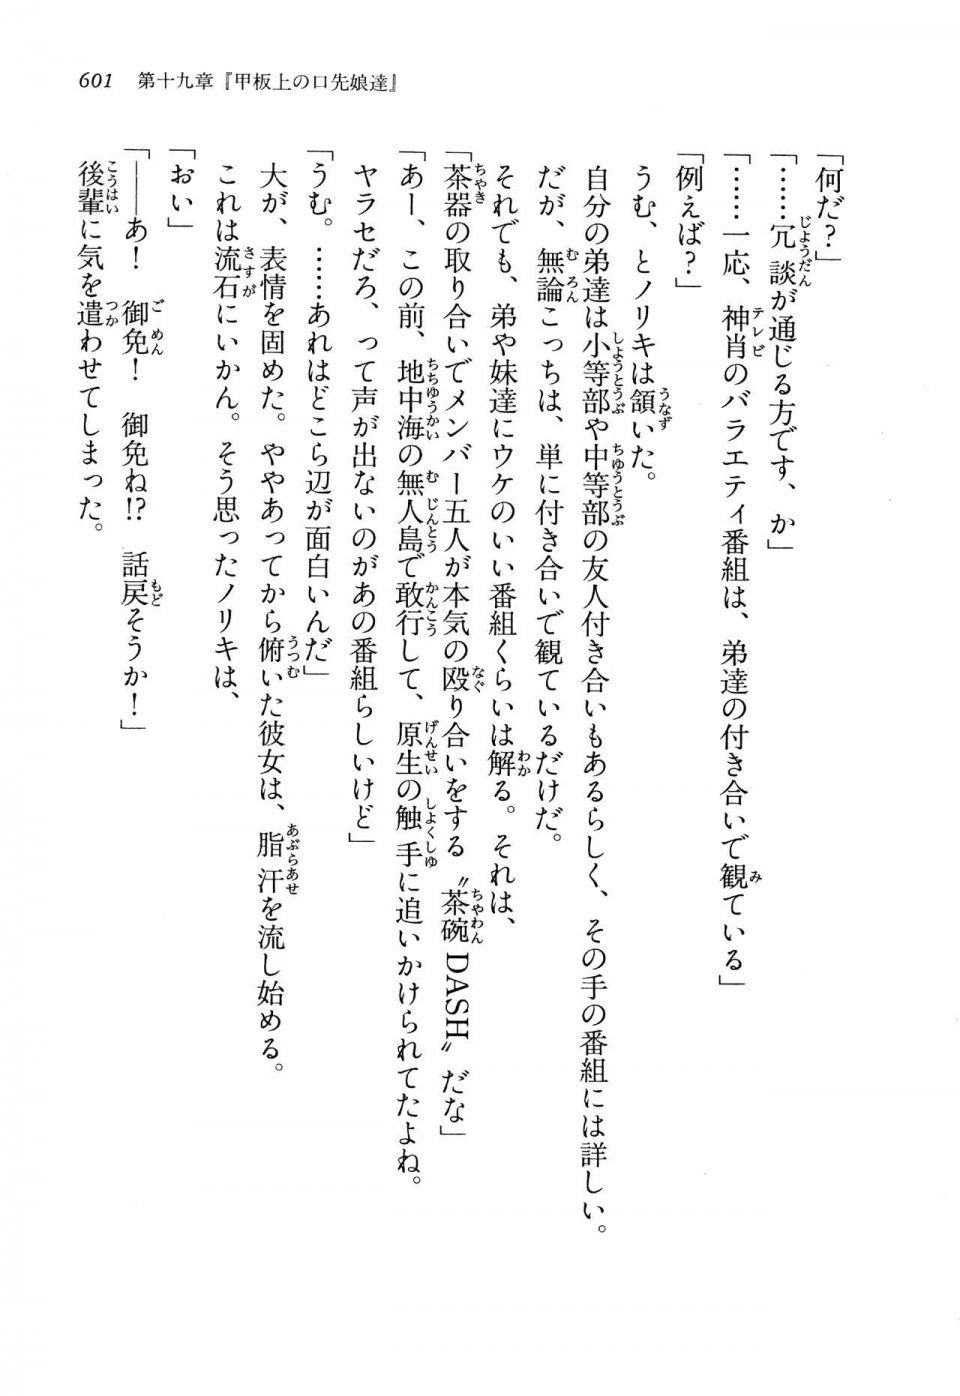 Kyoukai Senjou no Horizon LN Vol 13(6A) - Photo #601